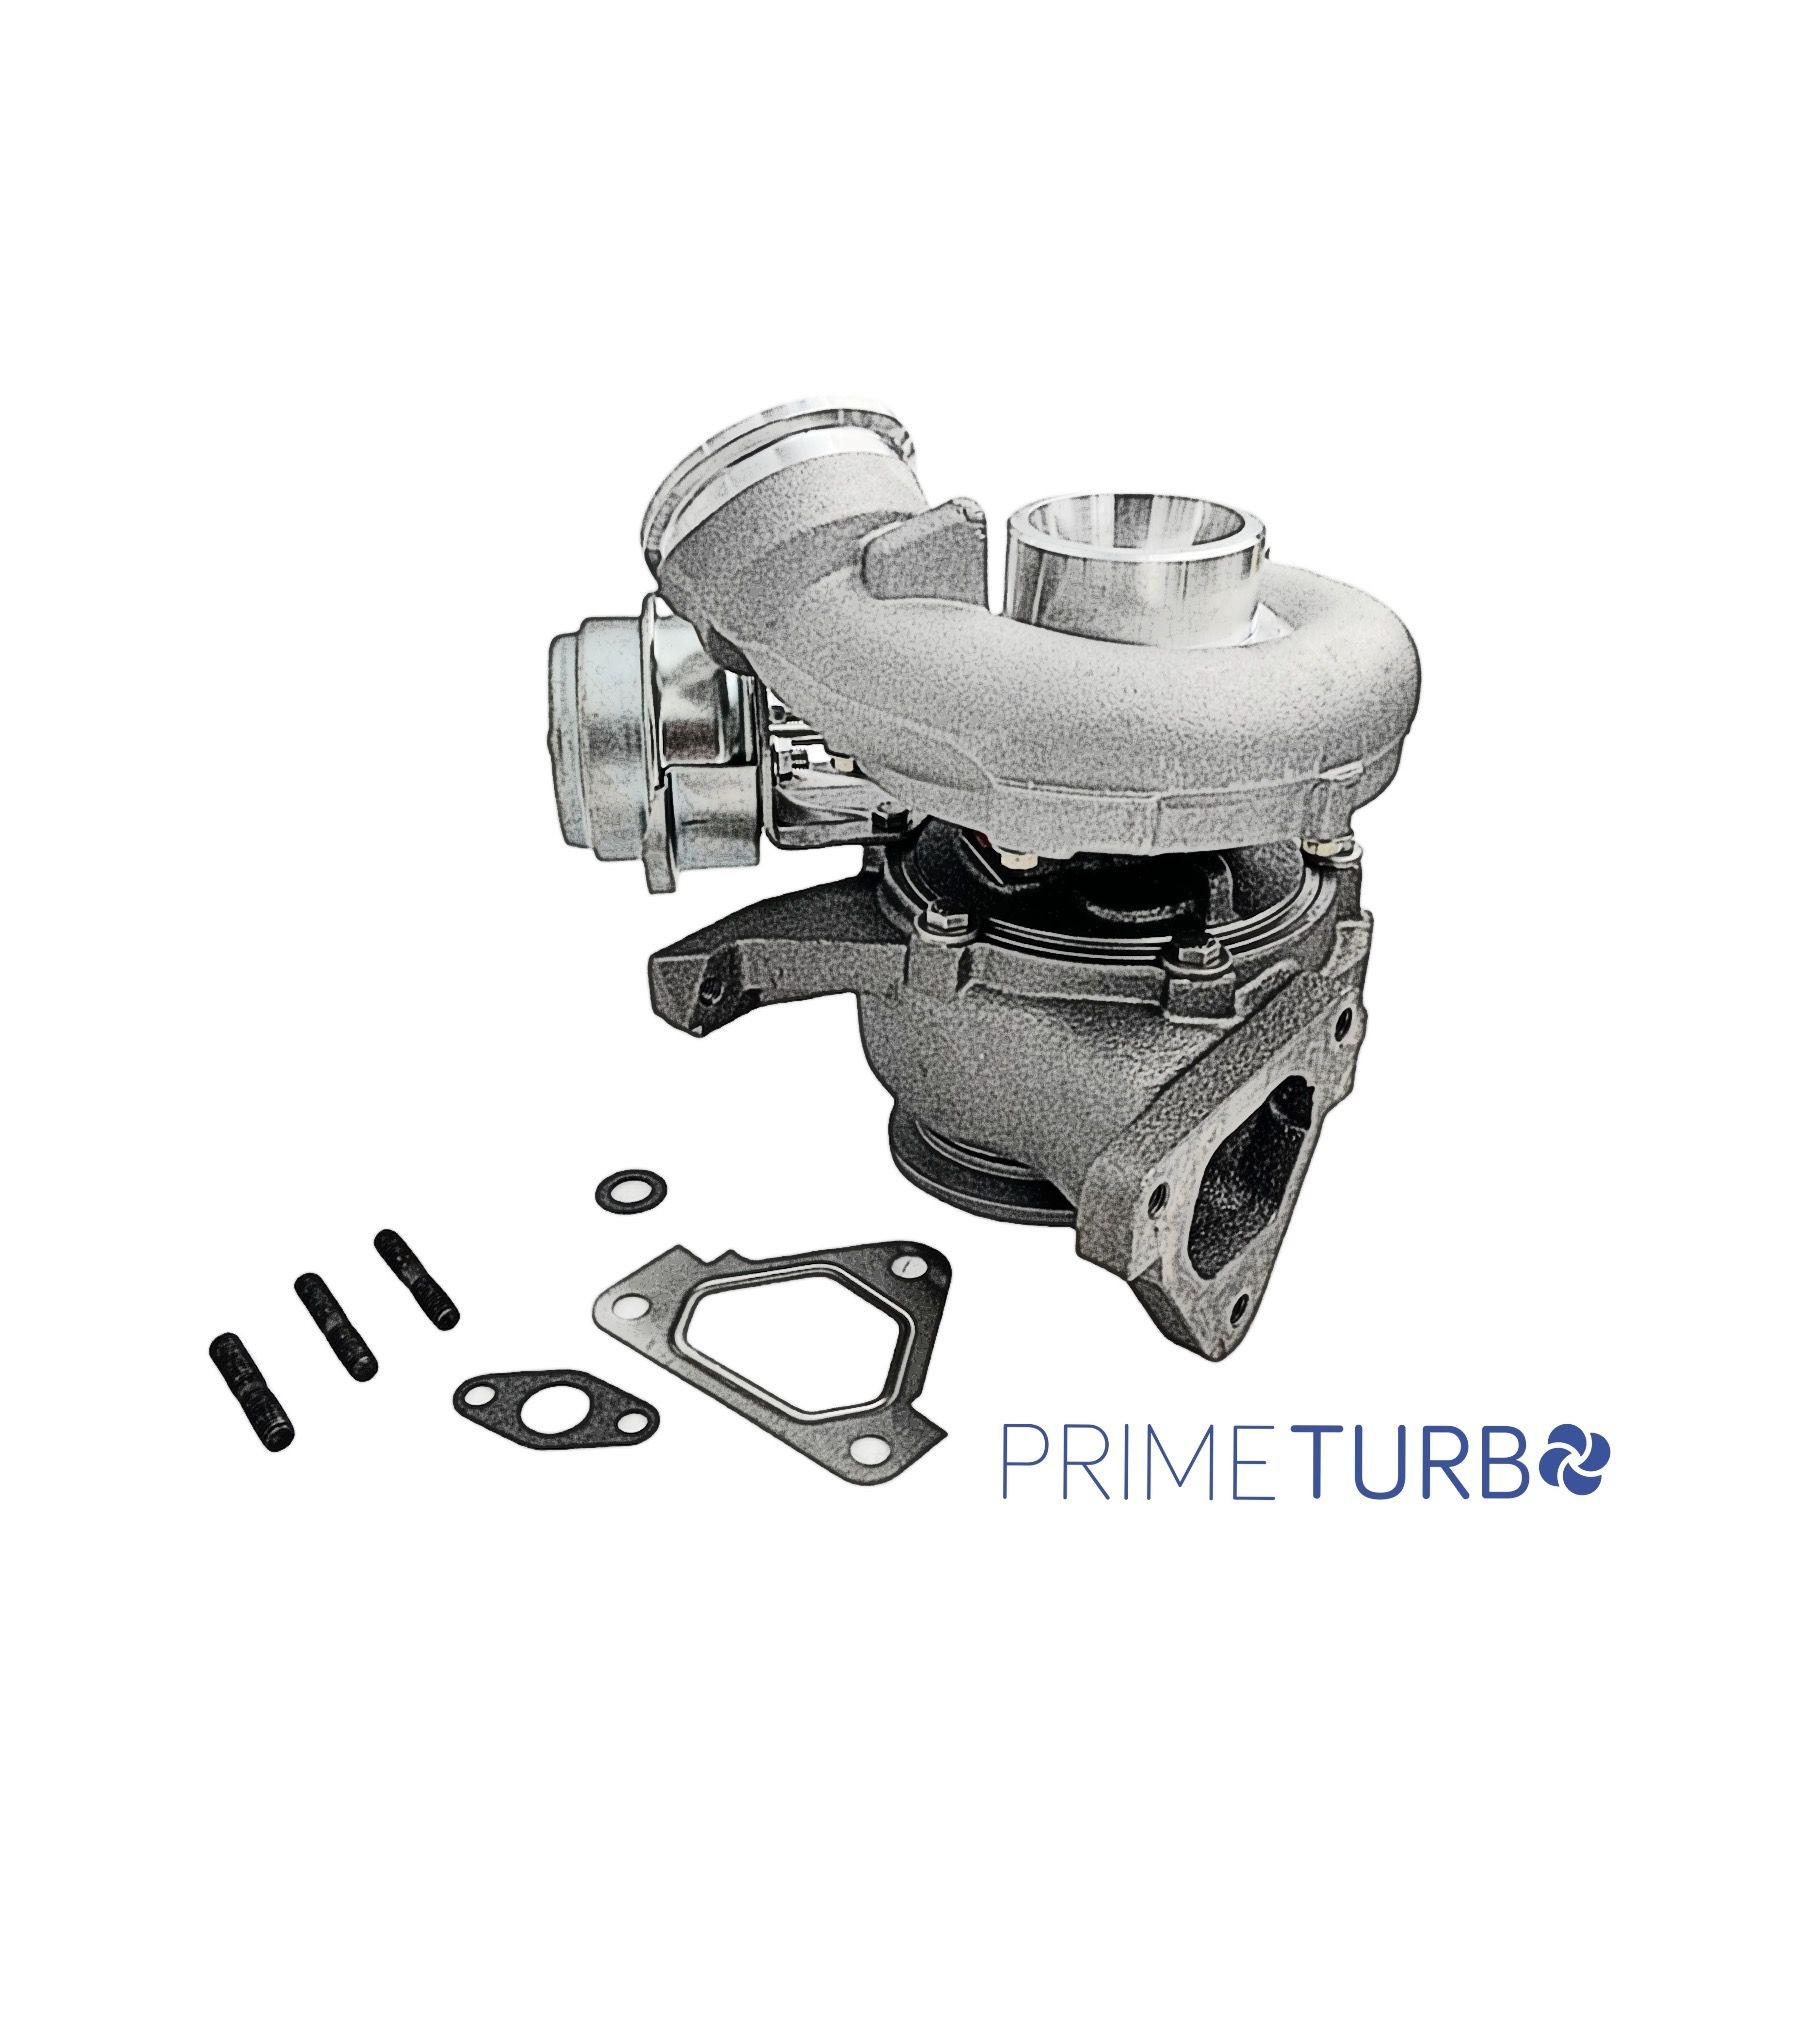 Prime Turbo V00553T CHRA turbo